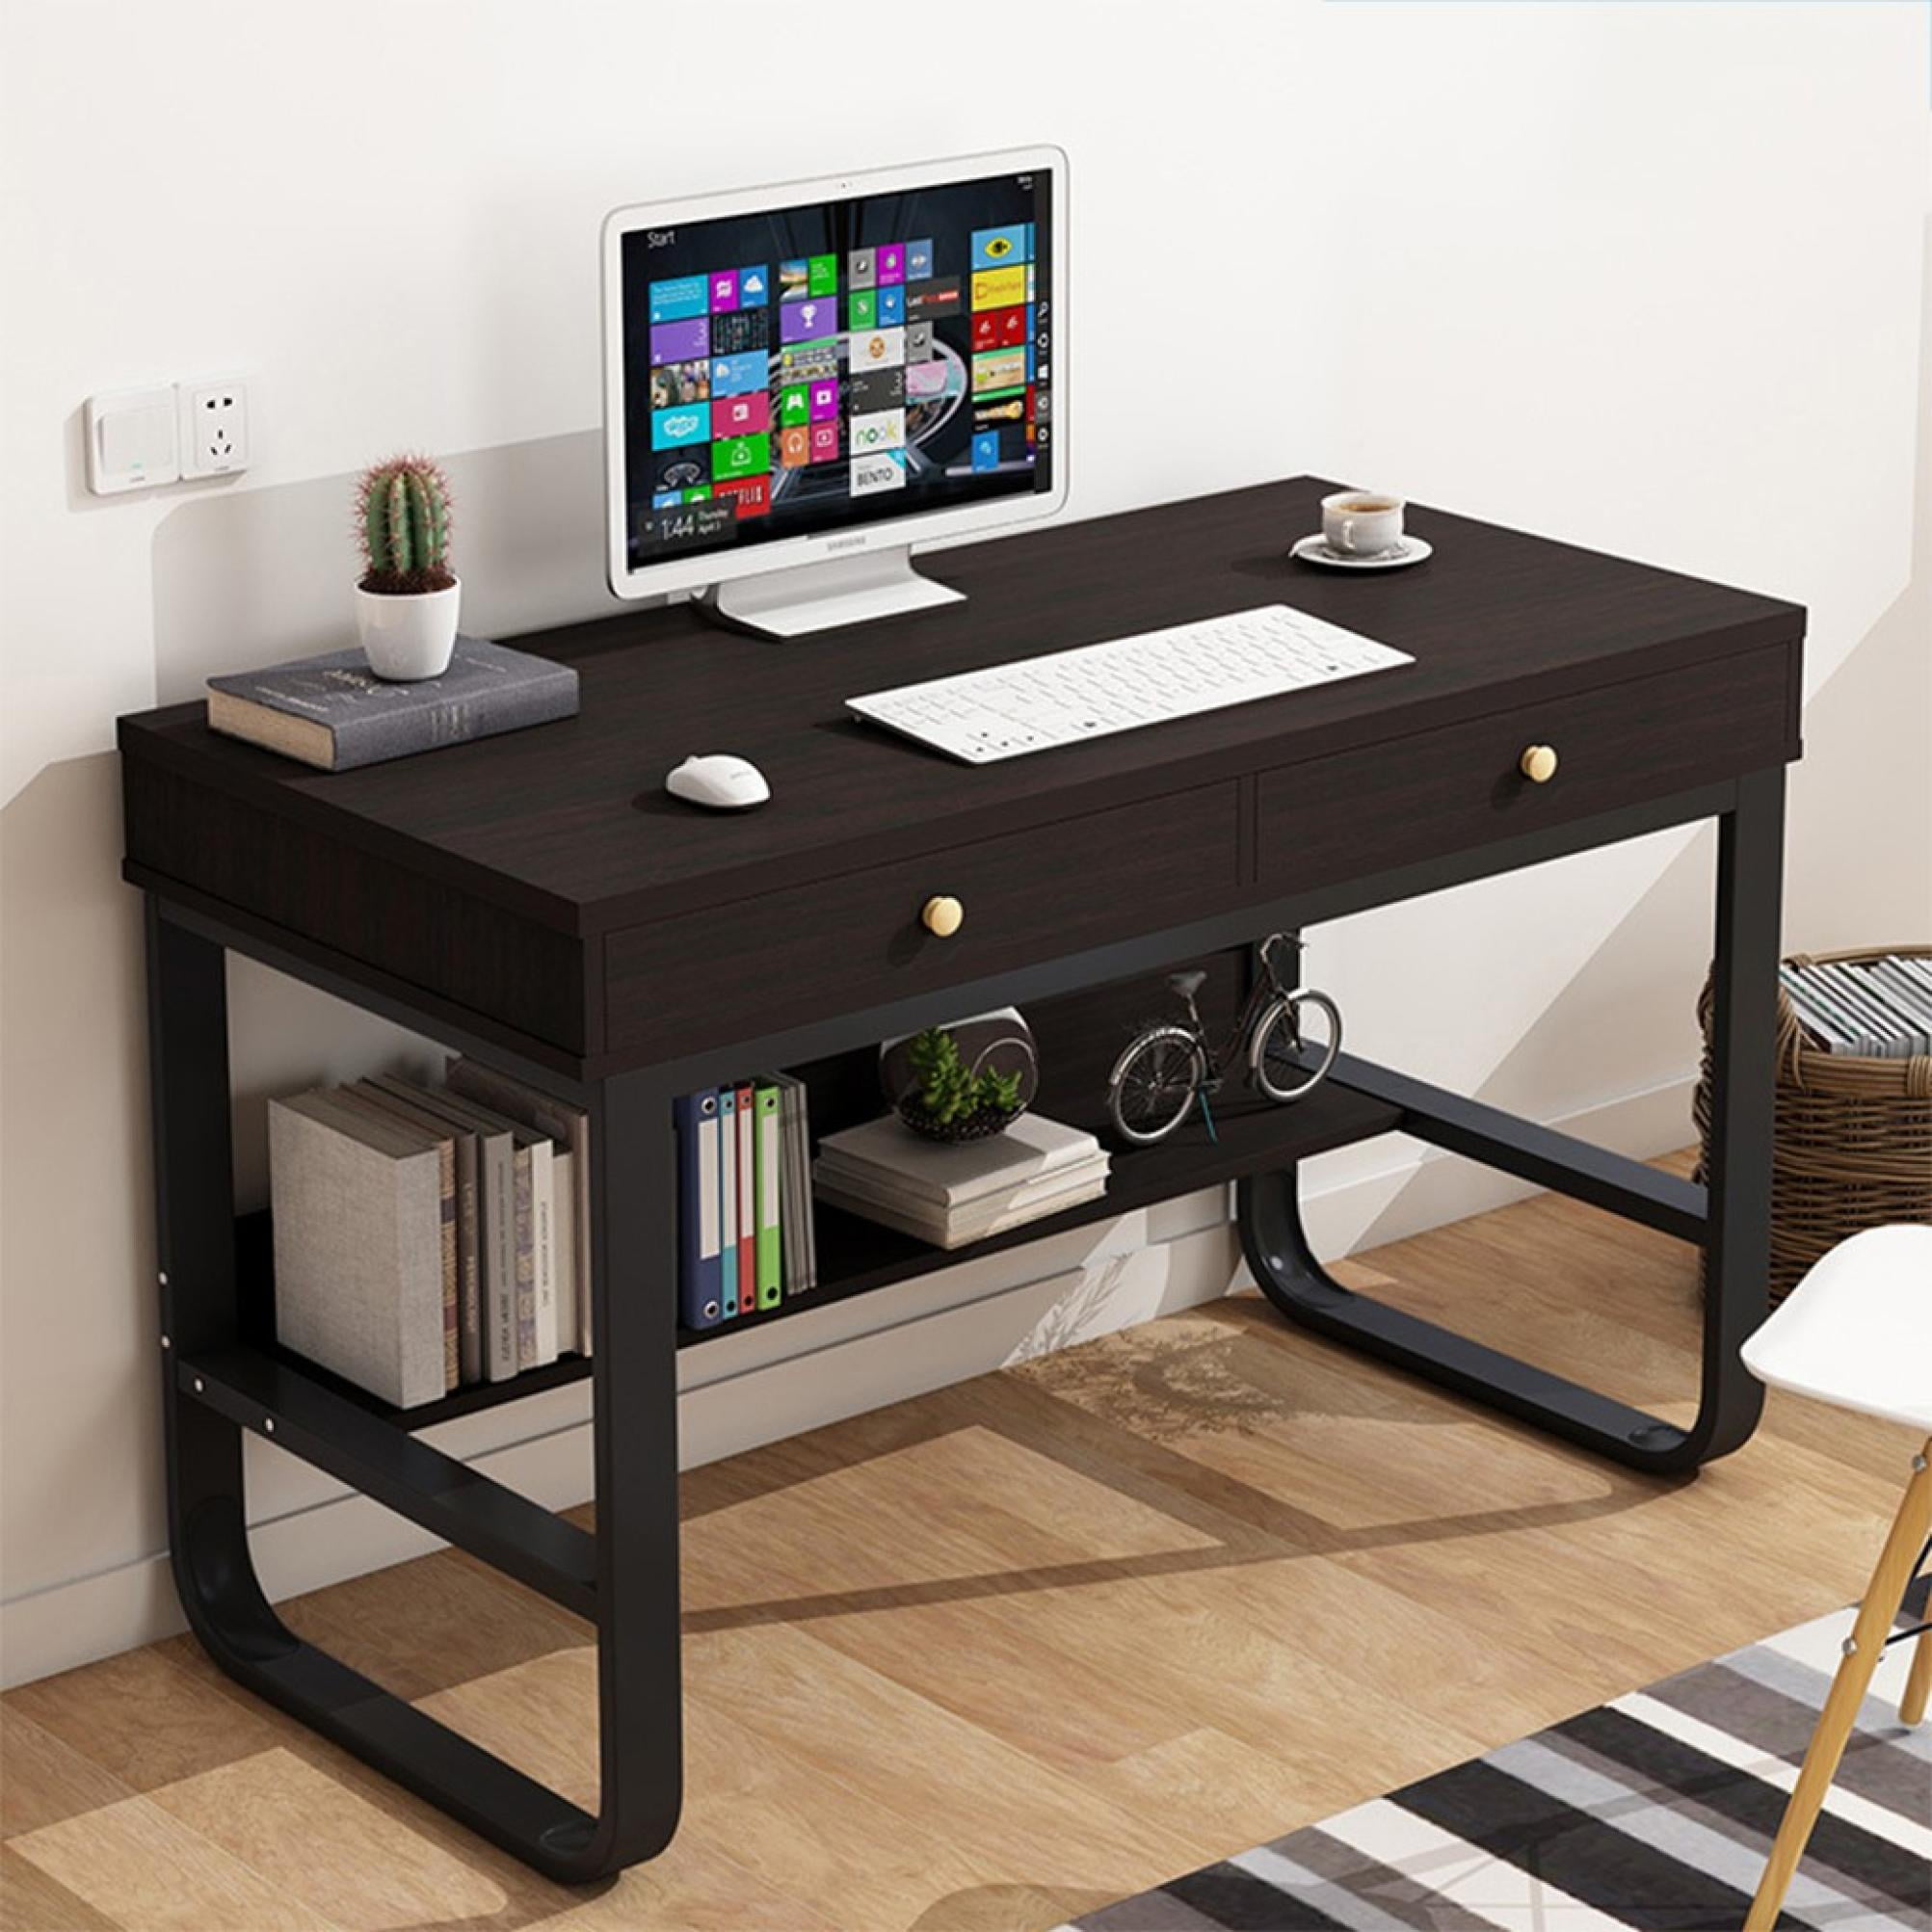 Details about   Modern Office Desk Computer Desk W/Drawer Shelf Laptop Home Desk Table Home US 